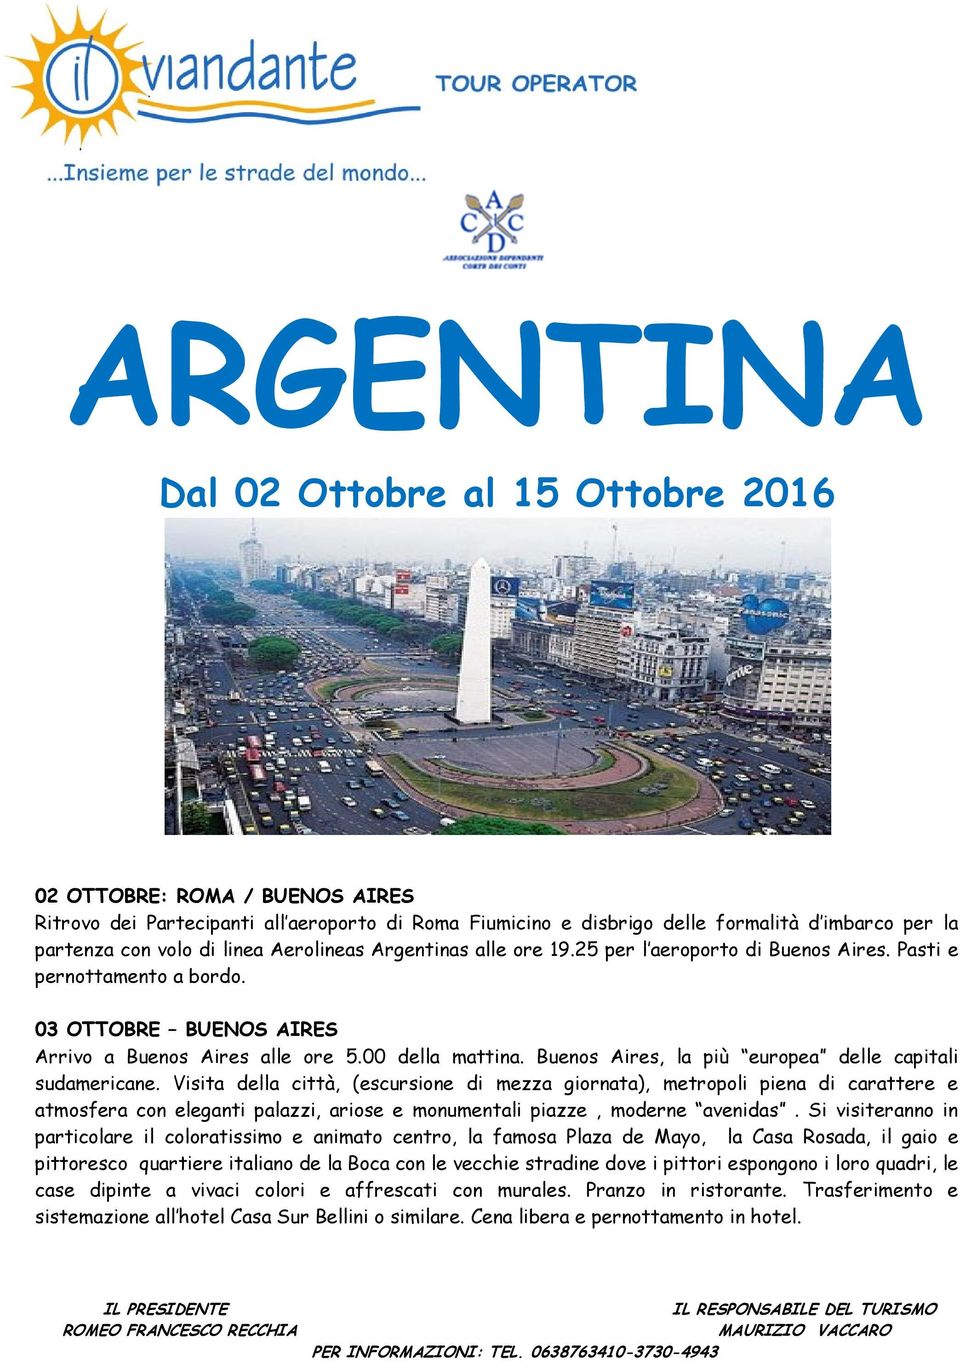 Buenos Aires, la più europea delle capitali sudamericane.